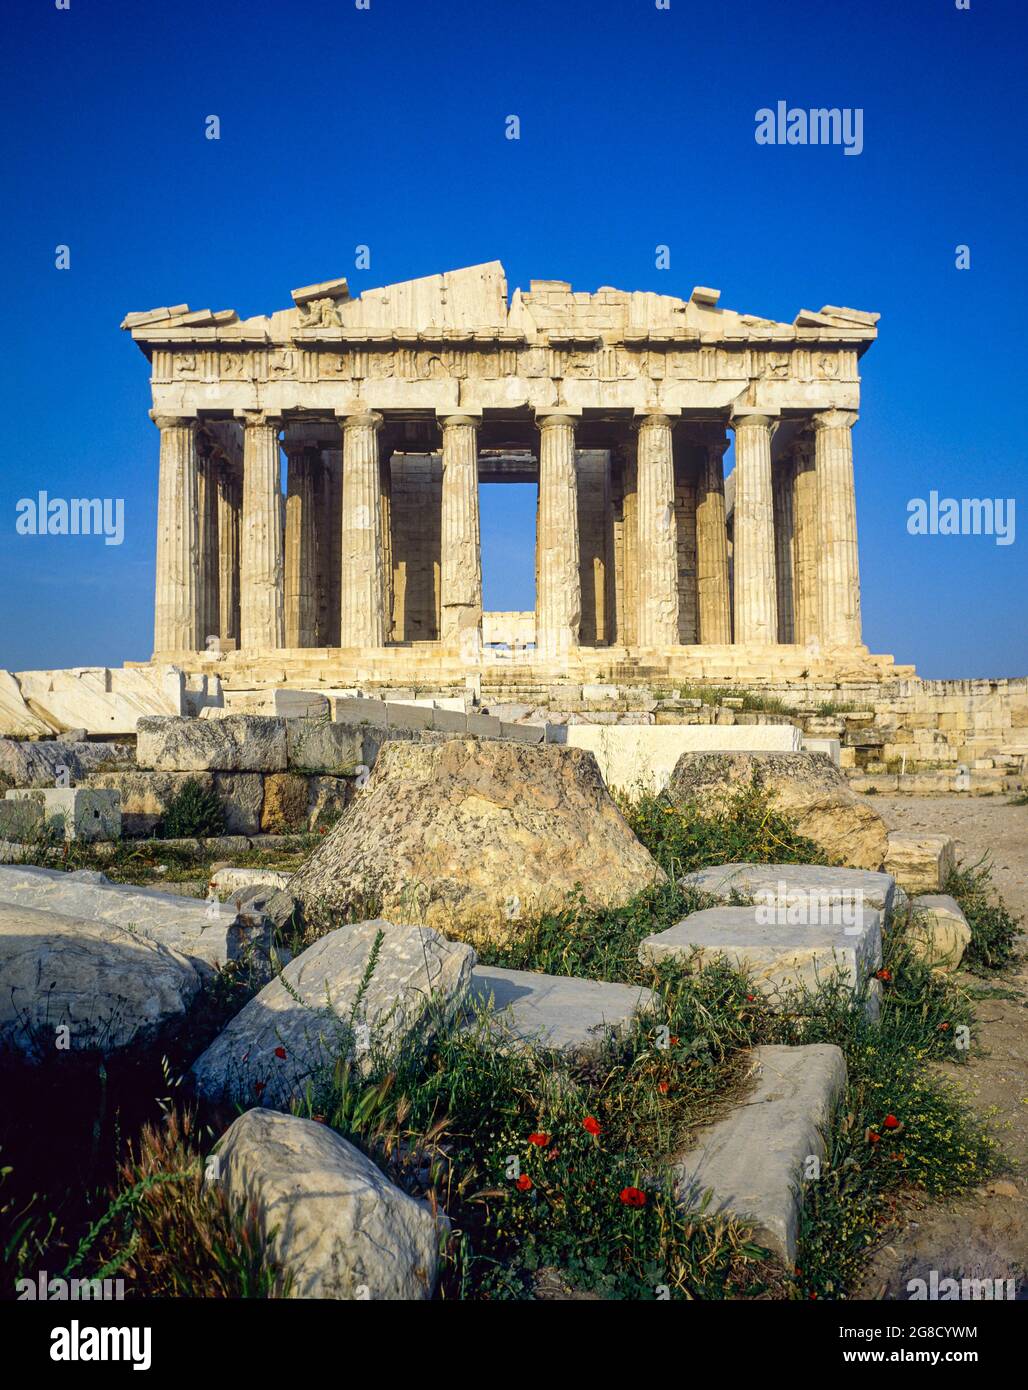 Athens, Parthenon temple, Acropolis hill, Greece, Europe, Stock Photo